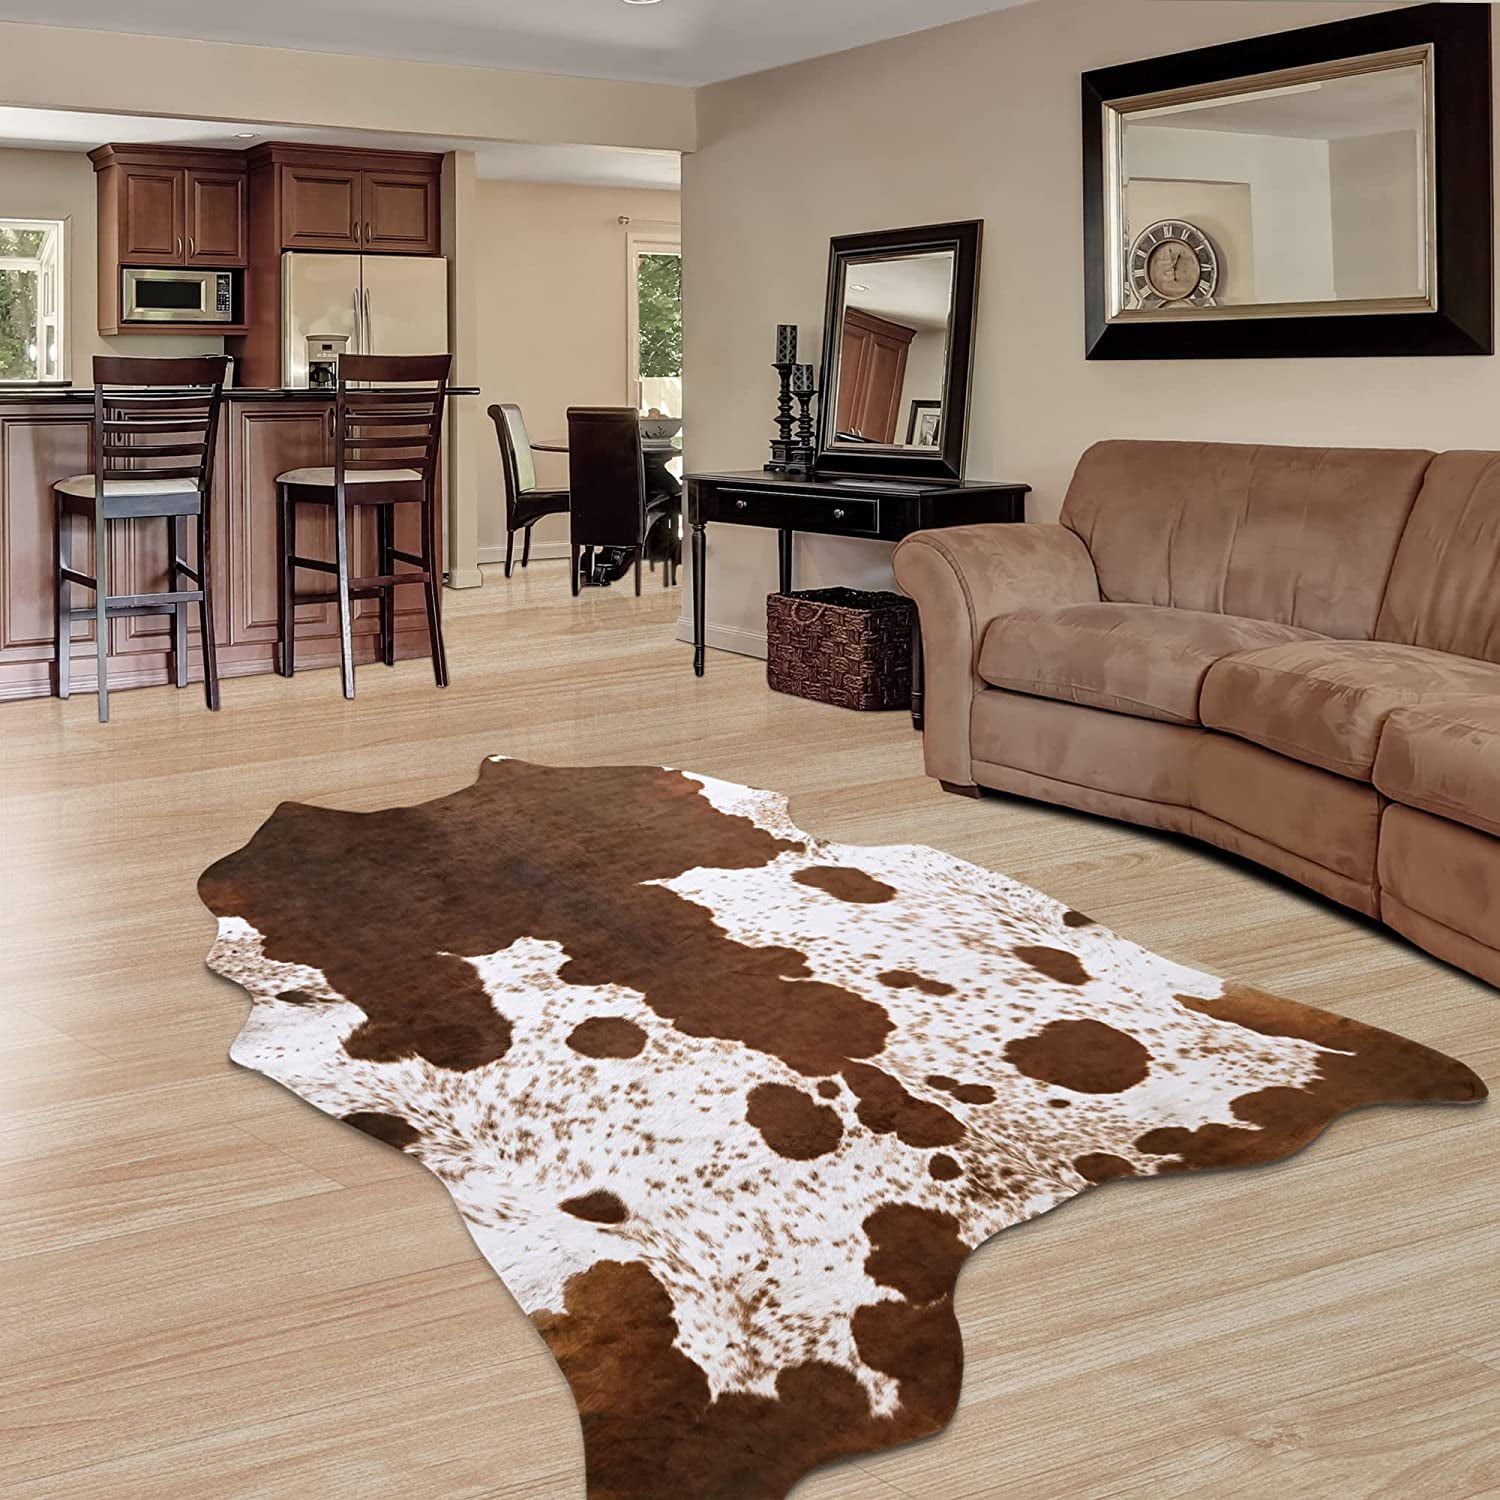 Cowhide Area Rug 3.6' X 2.5' Cowskin Hide Carpet Floor Entrance Door Table Decor 